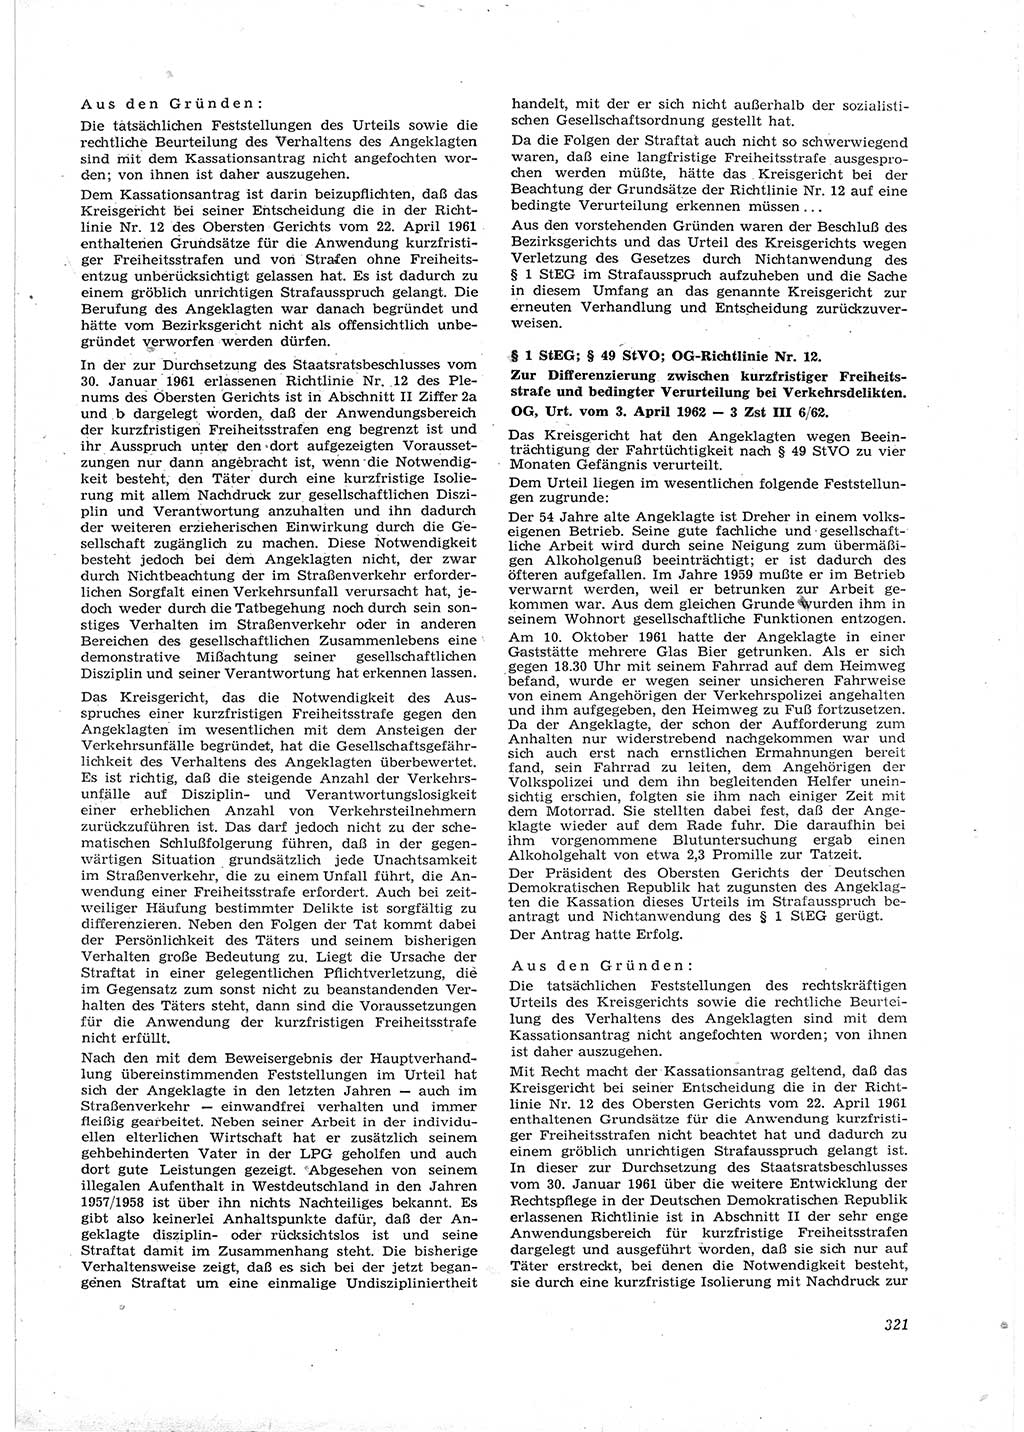 Neue Justiz (NJ), Zeitschrift für Recht und Rechtswissenschaft [Deutsche Demokratische Republik (DDR)], 16. Jahrgang 1962, Seite 321 (NJ DDR 1962, S. 321)